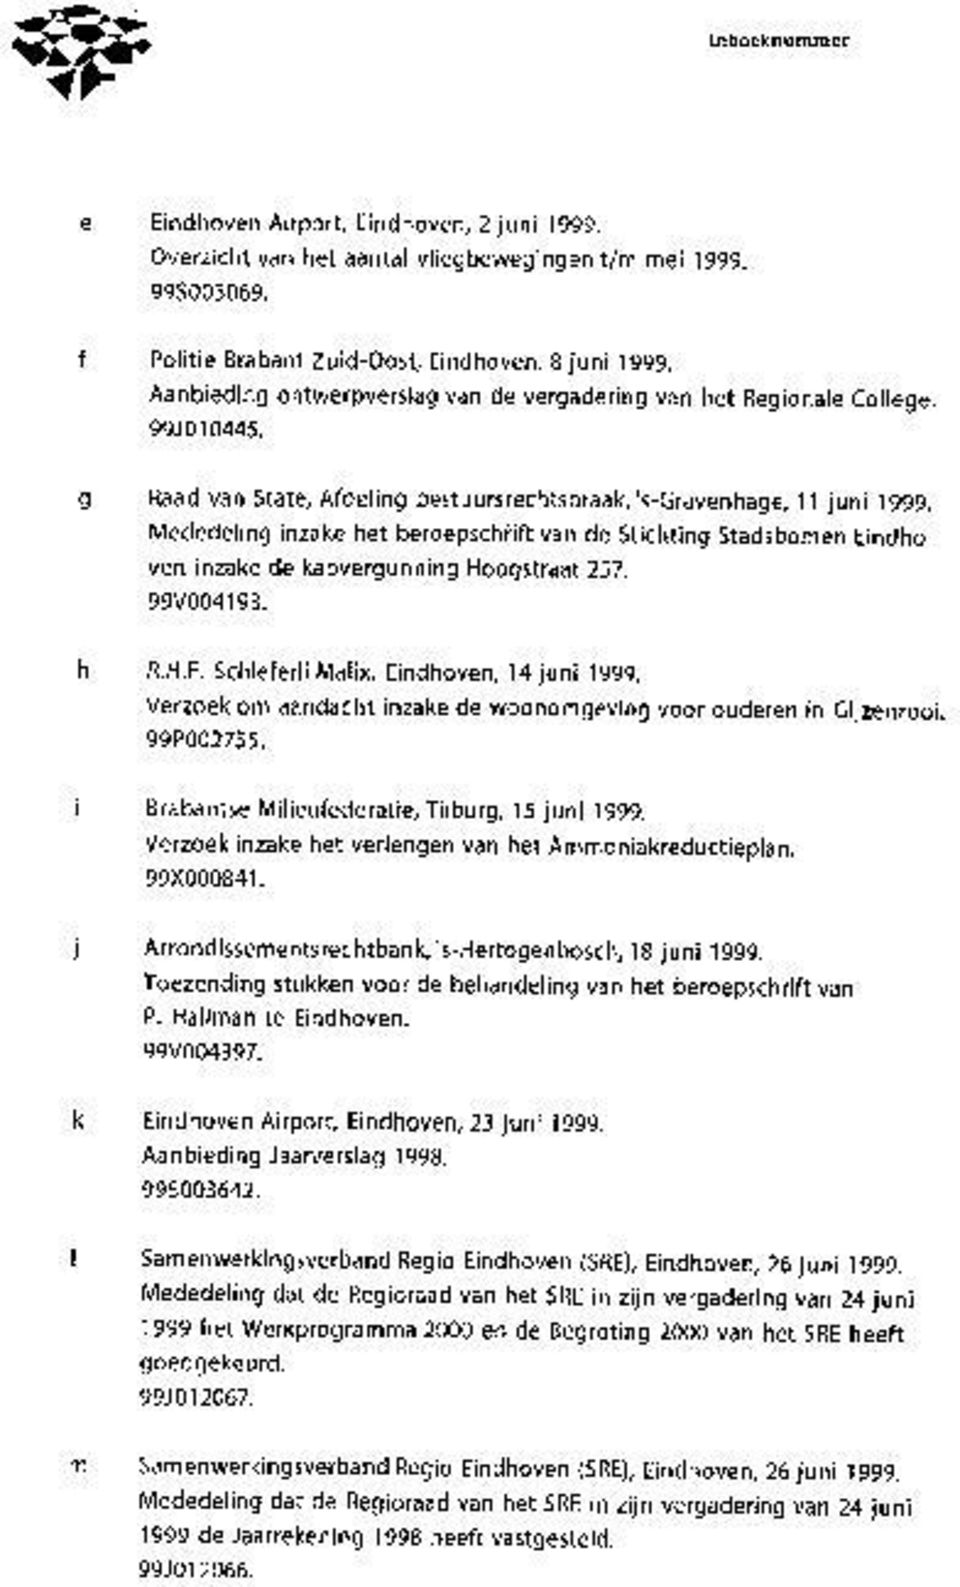 Mededeling inzake het beroepschiift van de Stichting Stadsbomen Eindhoven inzake de kapvergunning Hoogstraat 257. 99V004193. h R.H.F. Schieferli Malix, Eindhoven, 14 juni 1999.